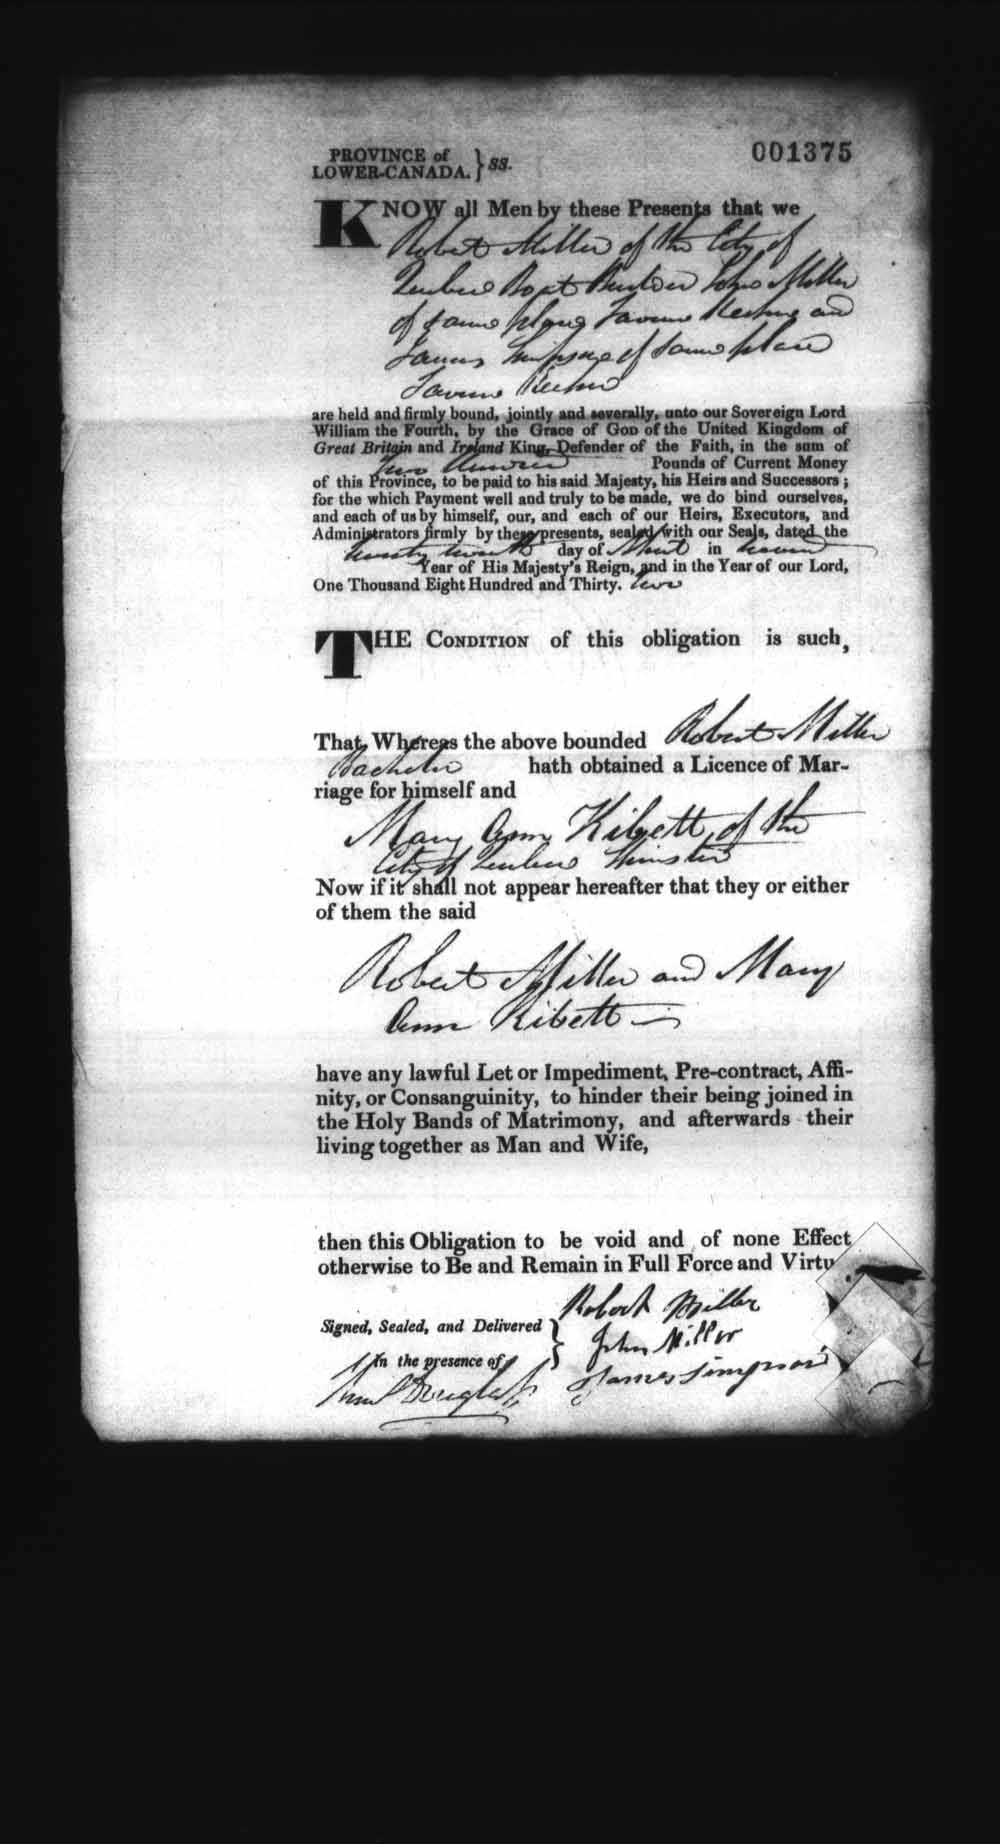 Page numérisé de Cautionnements de mariages pour le Haut-Canada et le Bas-Canada (1779-1865) pour l'image numéro: e008237564